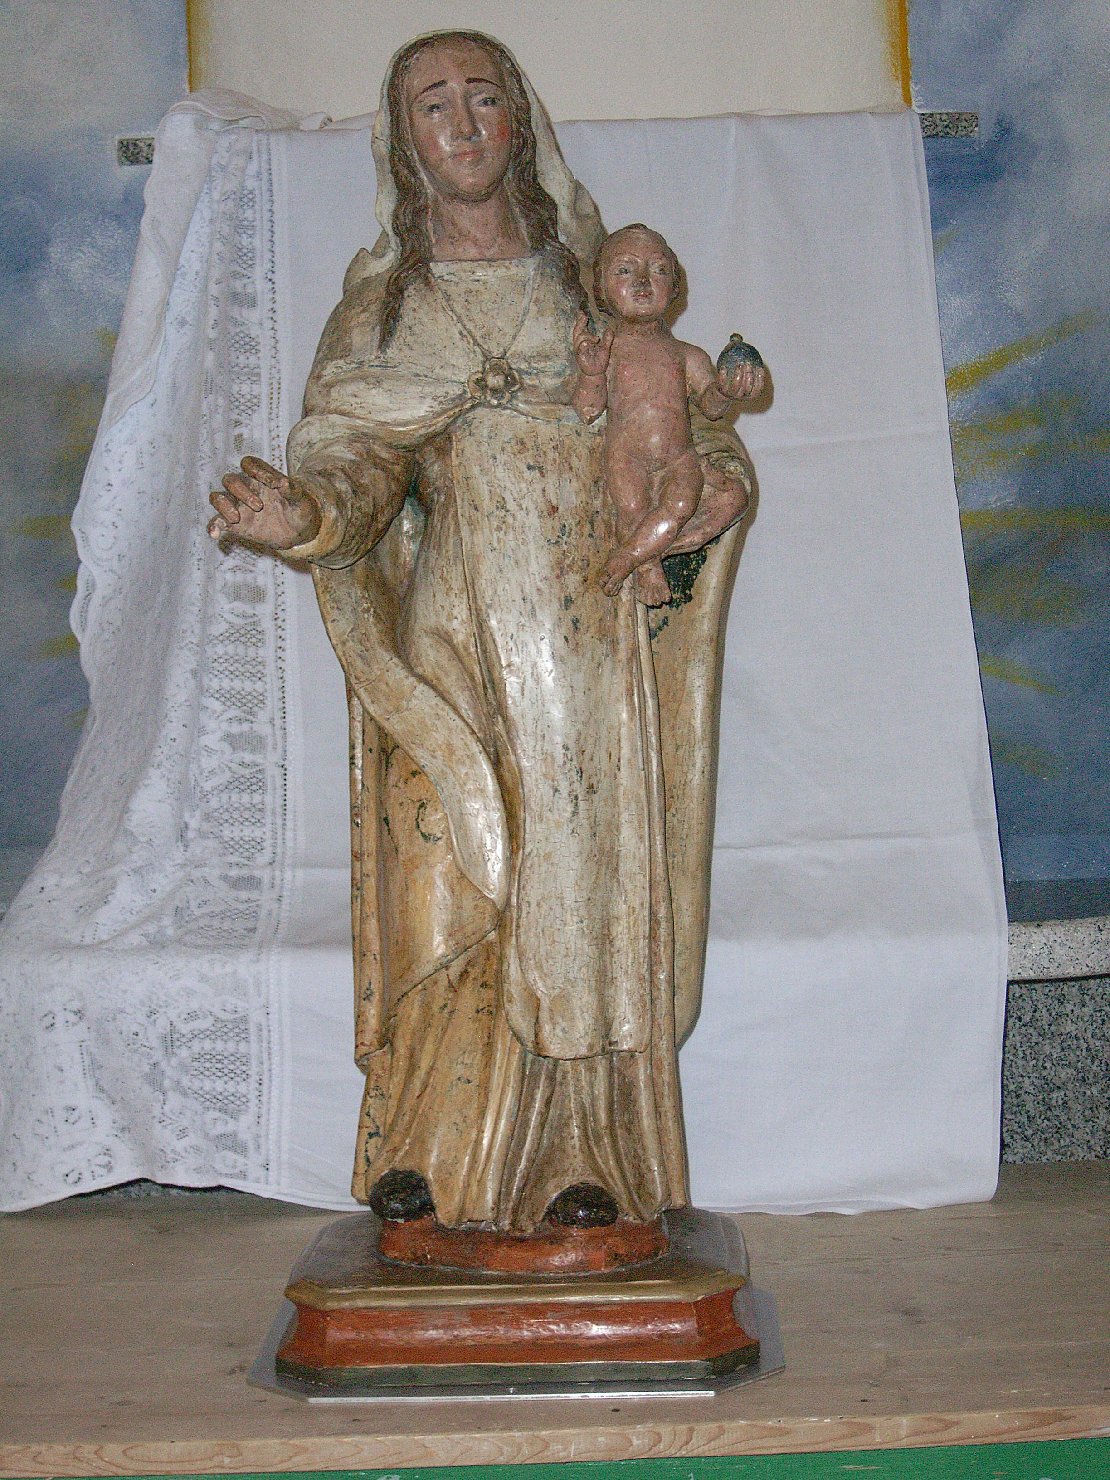 Nostra signora del rimedio, madonna con bambino (statua)